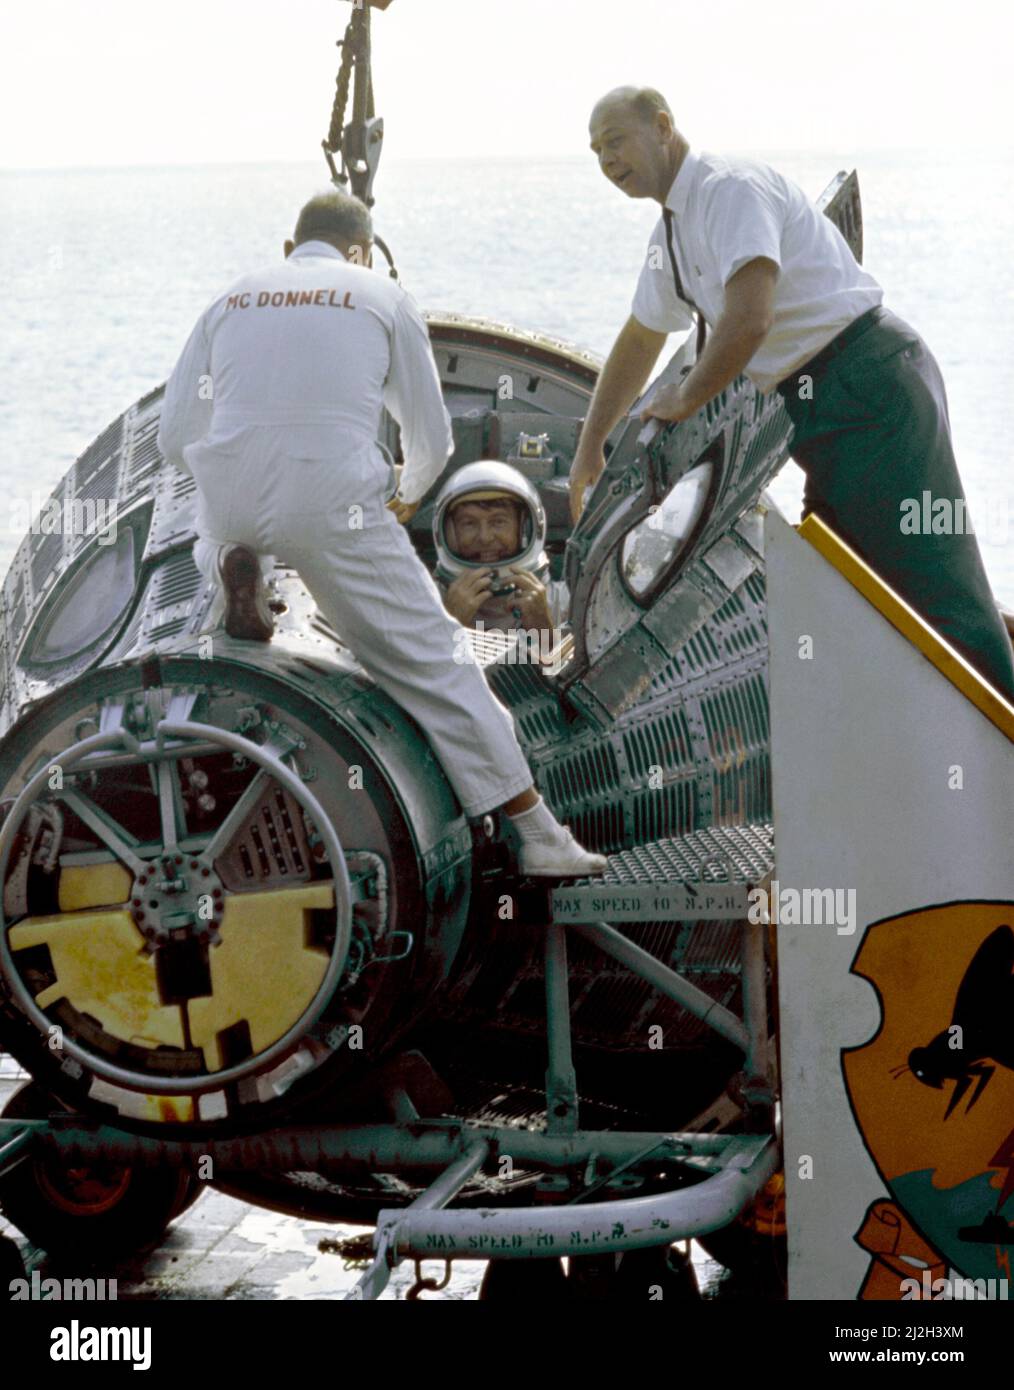 L'astronaute Walter Schirra dans l'engin spatial Gemini VI alors que lui et l'astronaute Thomas Stafford (non en vue) arrivent à bord du porte-avions U.S.S. Moraillons après leur splashdown. Banque D'Images